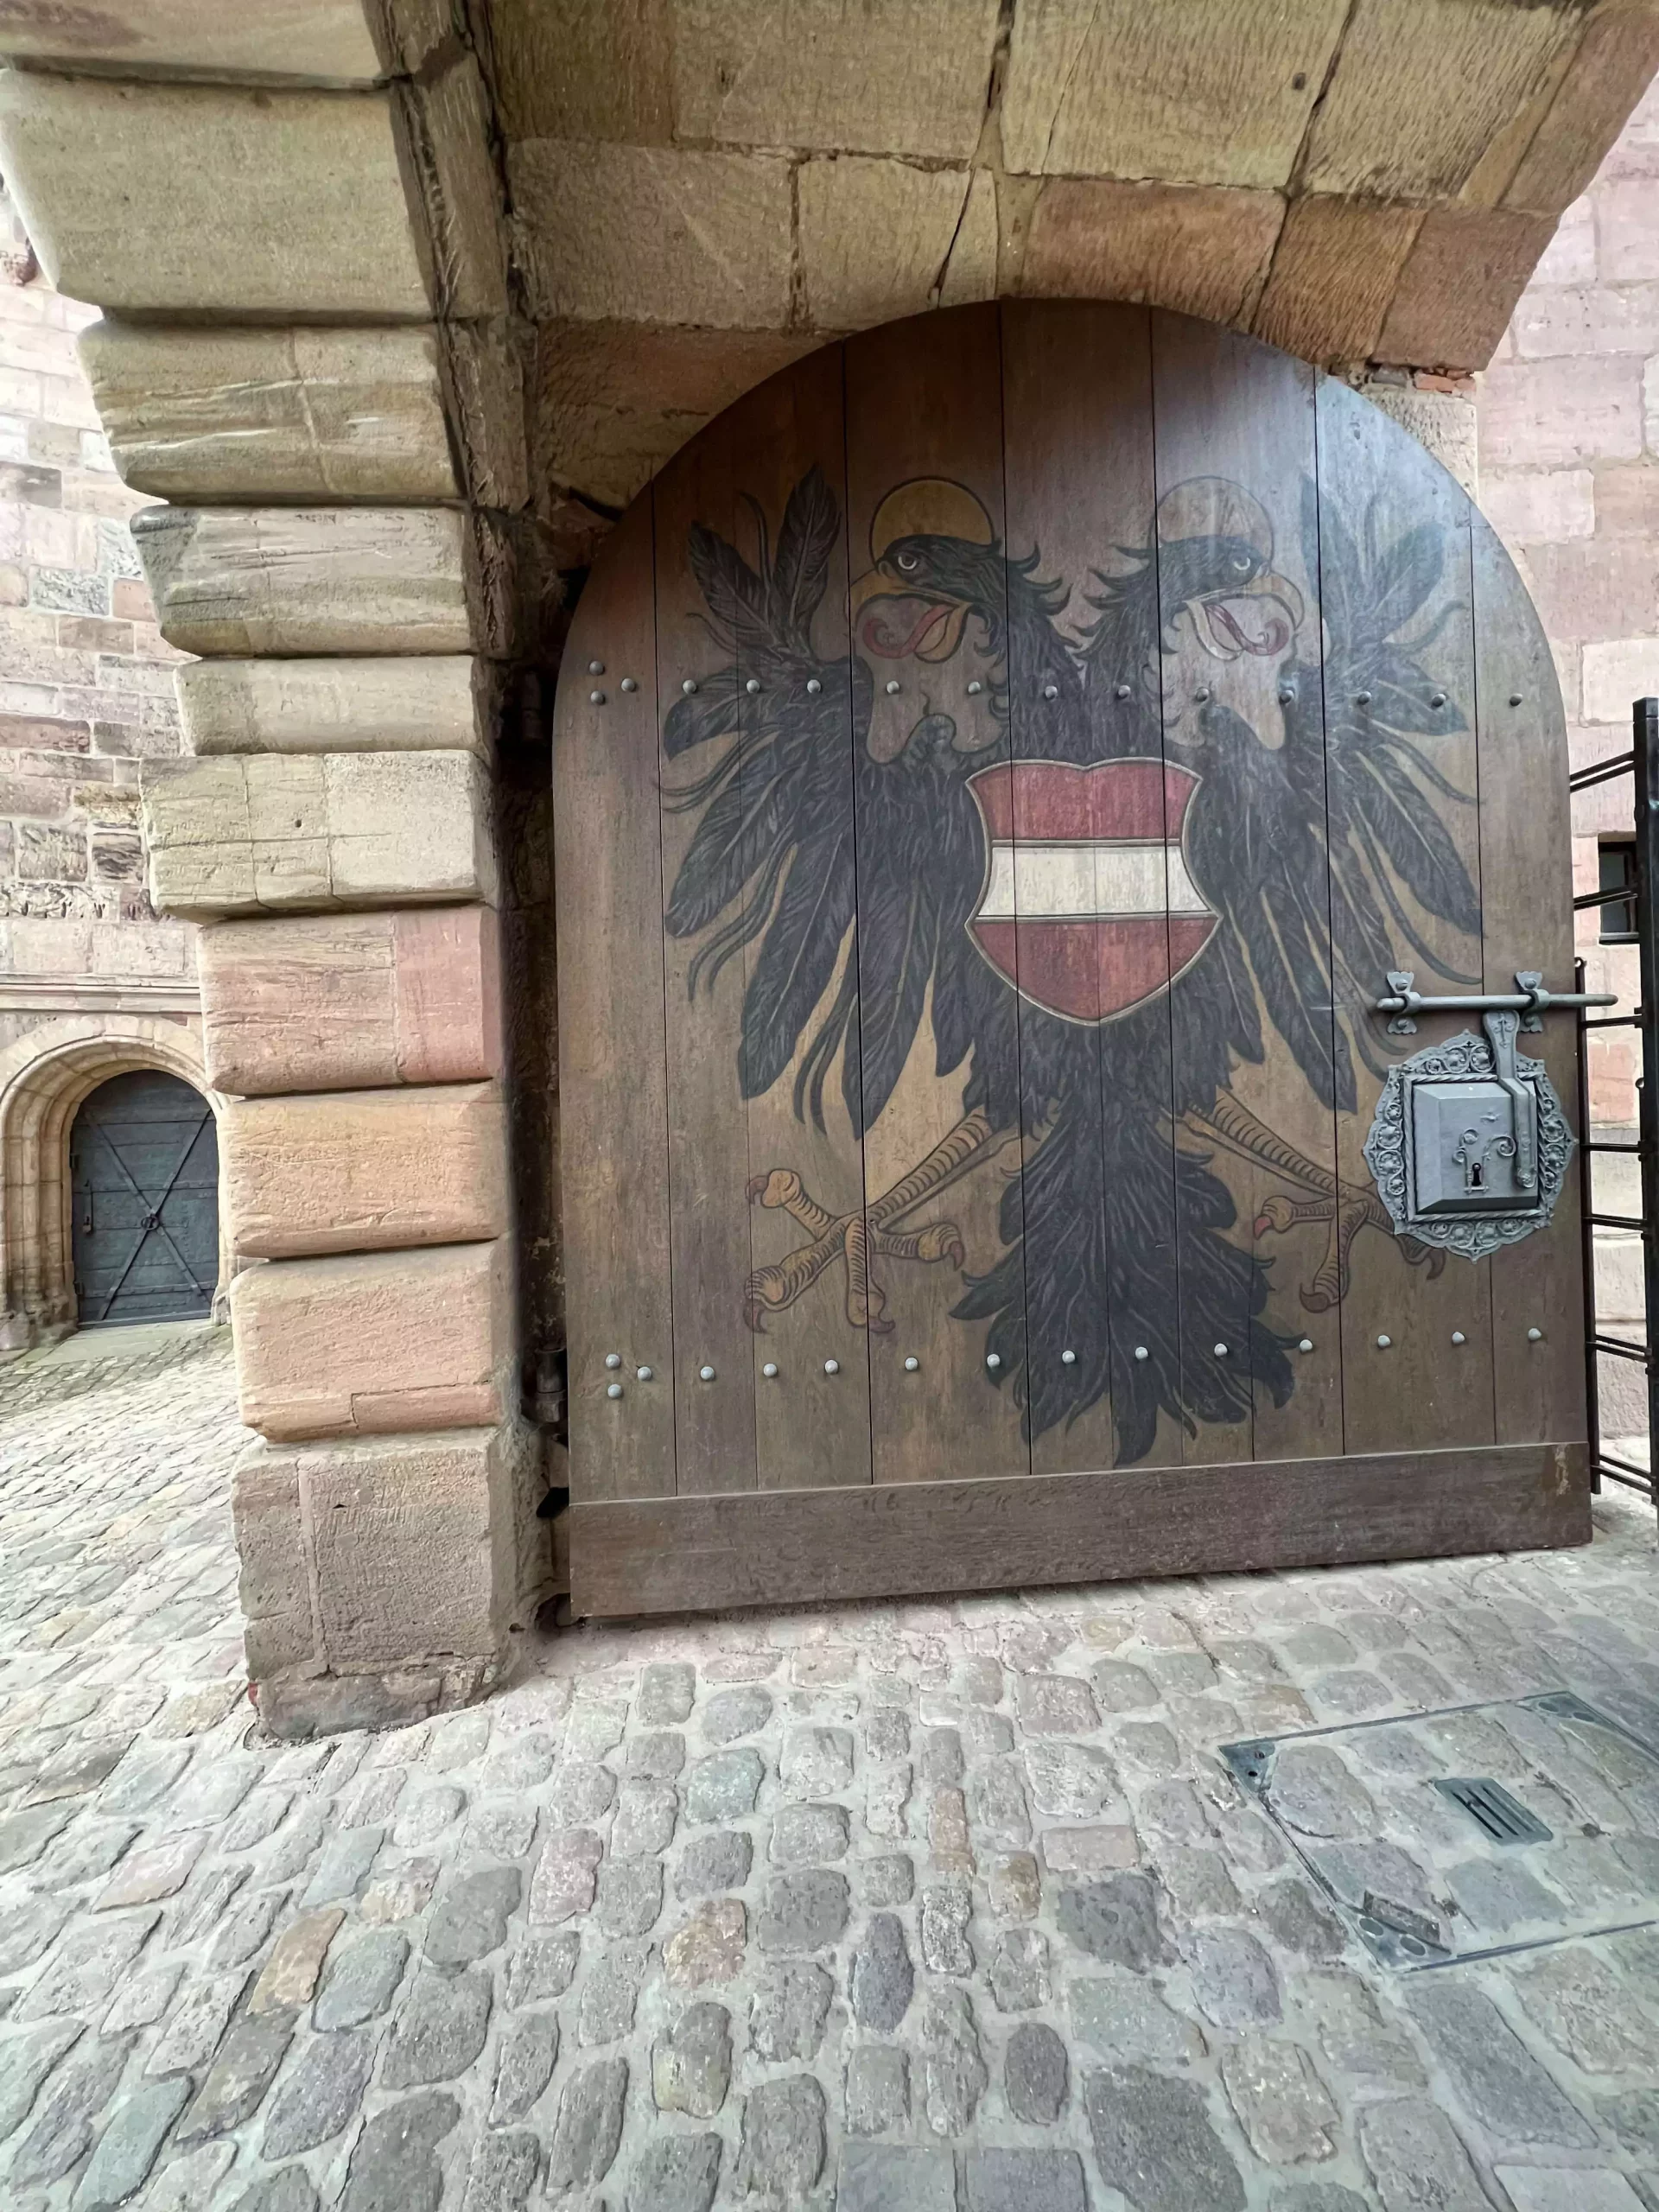 Imperial Castle Nuremberg